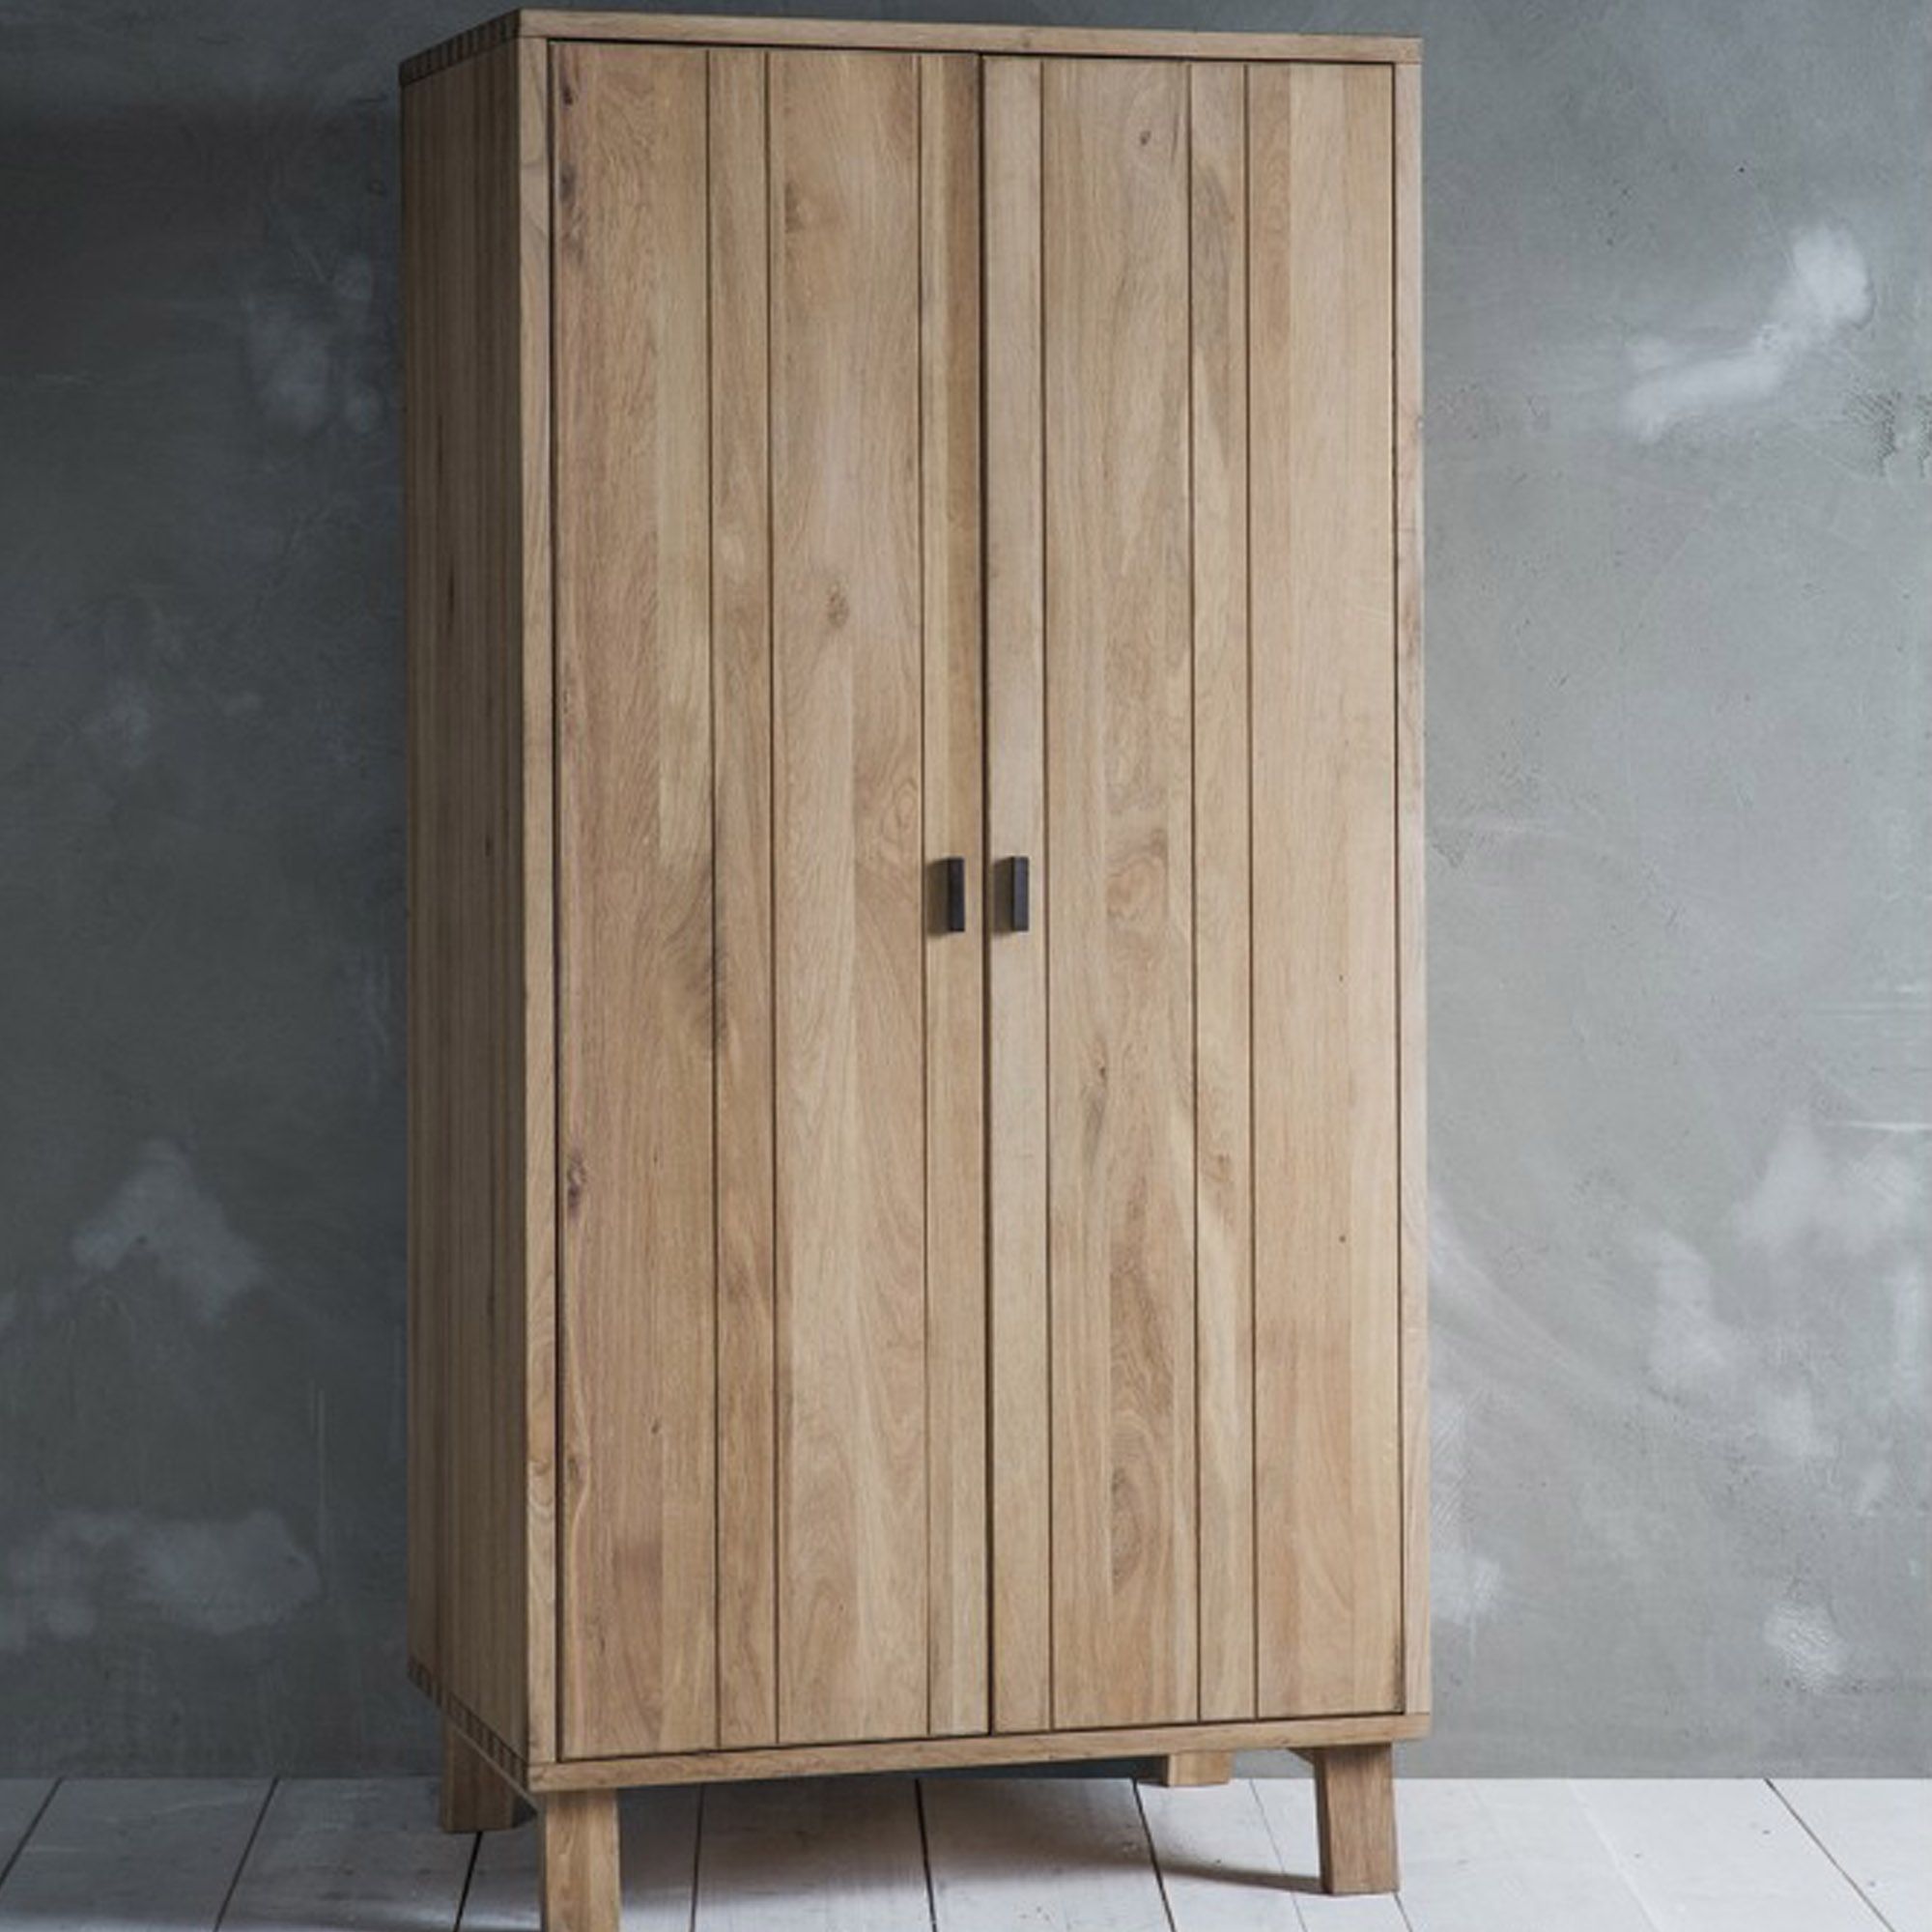 Kielder Wooden Wardrobe | Wooden Wardrobe | Modern Furniture With Regard To Wood Wardrobes (View 14 of 15)